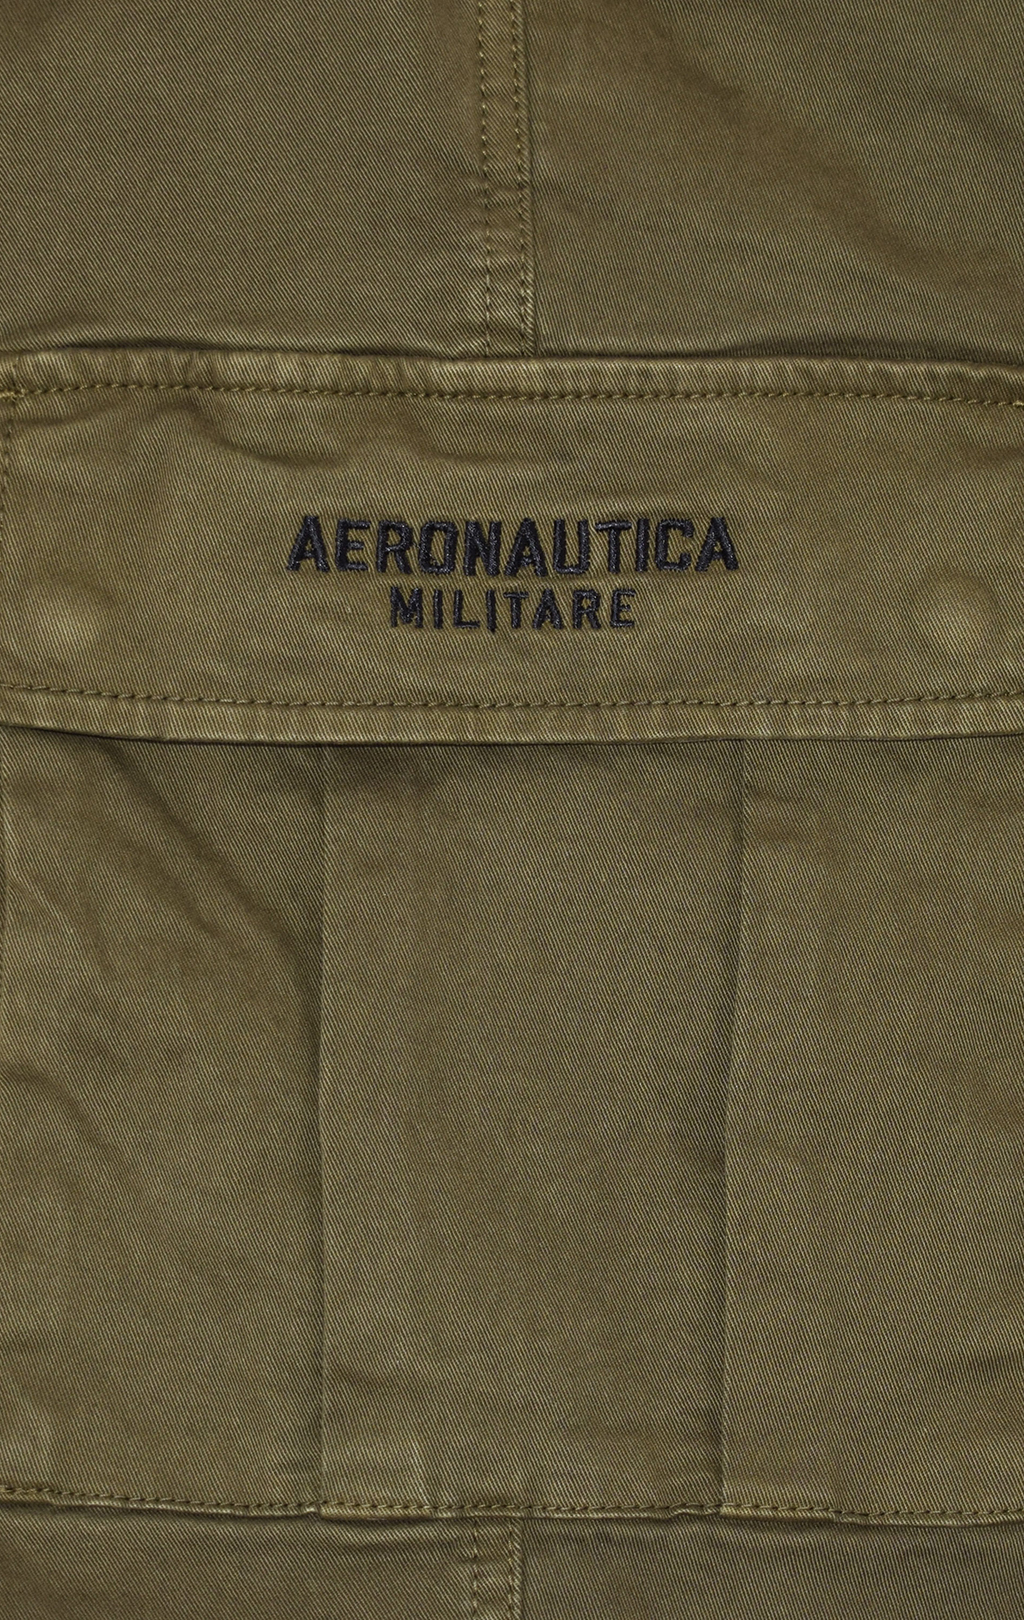 Брюки-карго AERONAUTICA MILITARE big size плотные FW 21/22/AL verde militare scuro (PA 1458) 